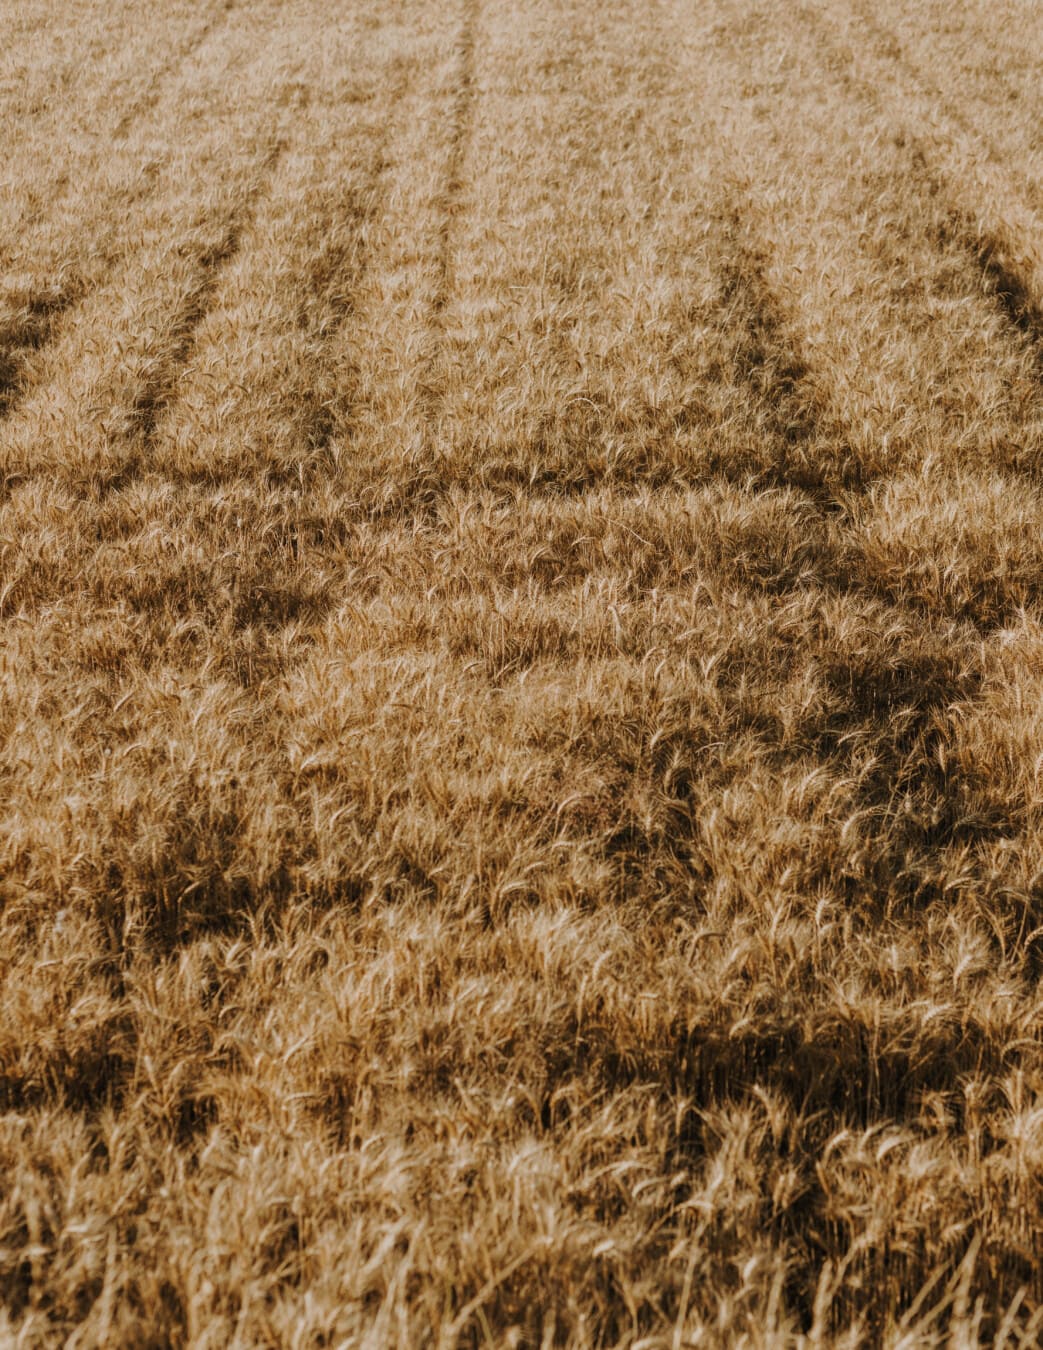 cánh đồng bằng phẵng, đất nông nghiệp, lúa mạch Hórdeum, hữu cơ, nông nghiệp, sản xuất, lĩnh vực, rơm, nông thôn, ngũ cốc